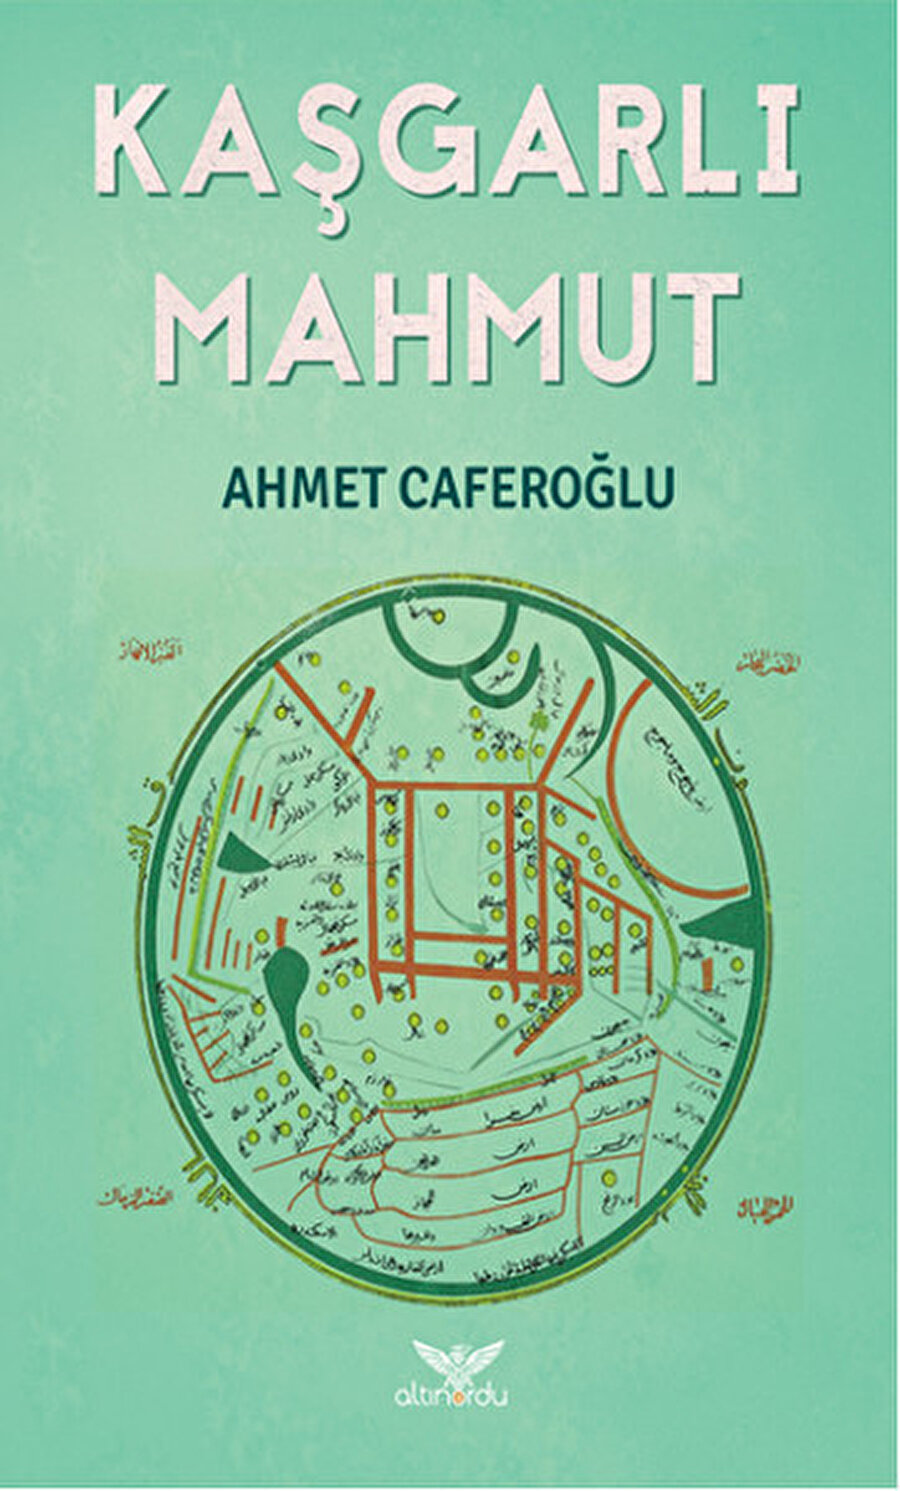 Kaşgarlı Mahmut, Ahmet Caferoğlu, Altınordu, 2016